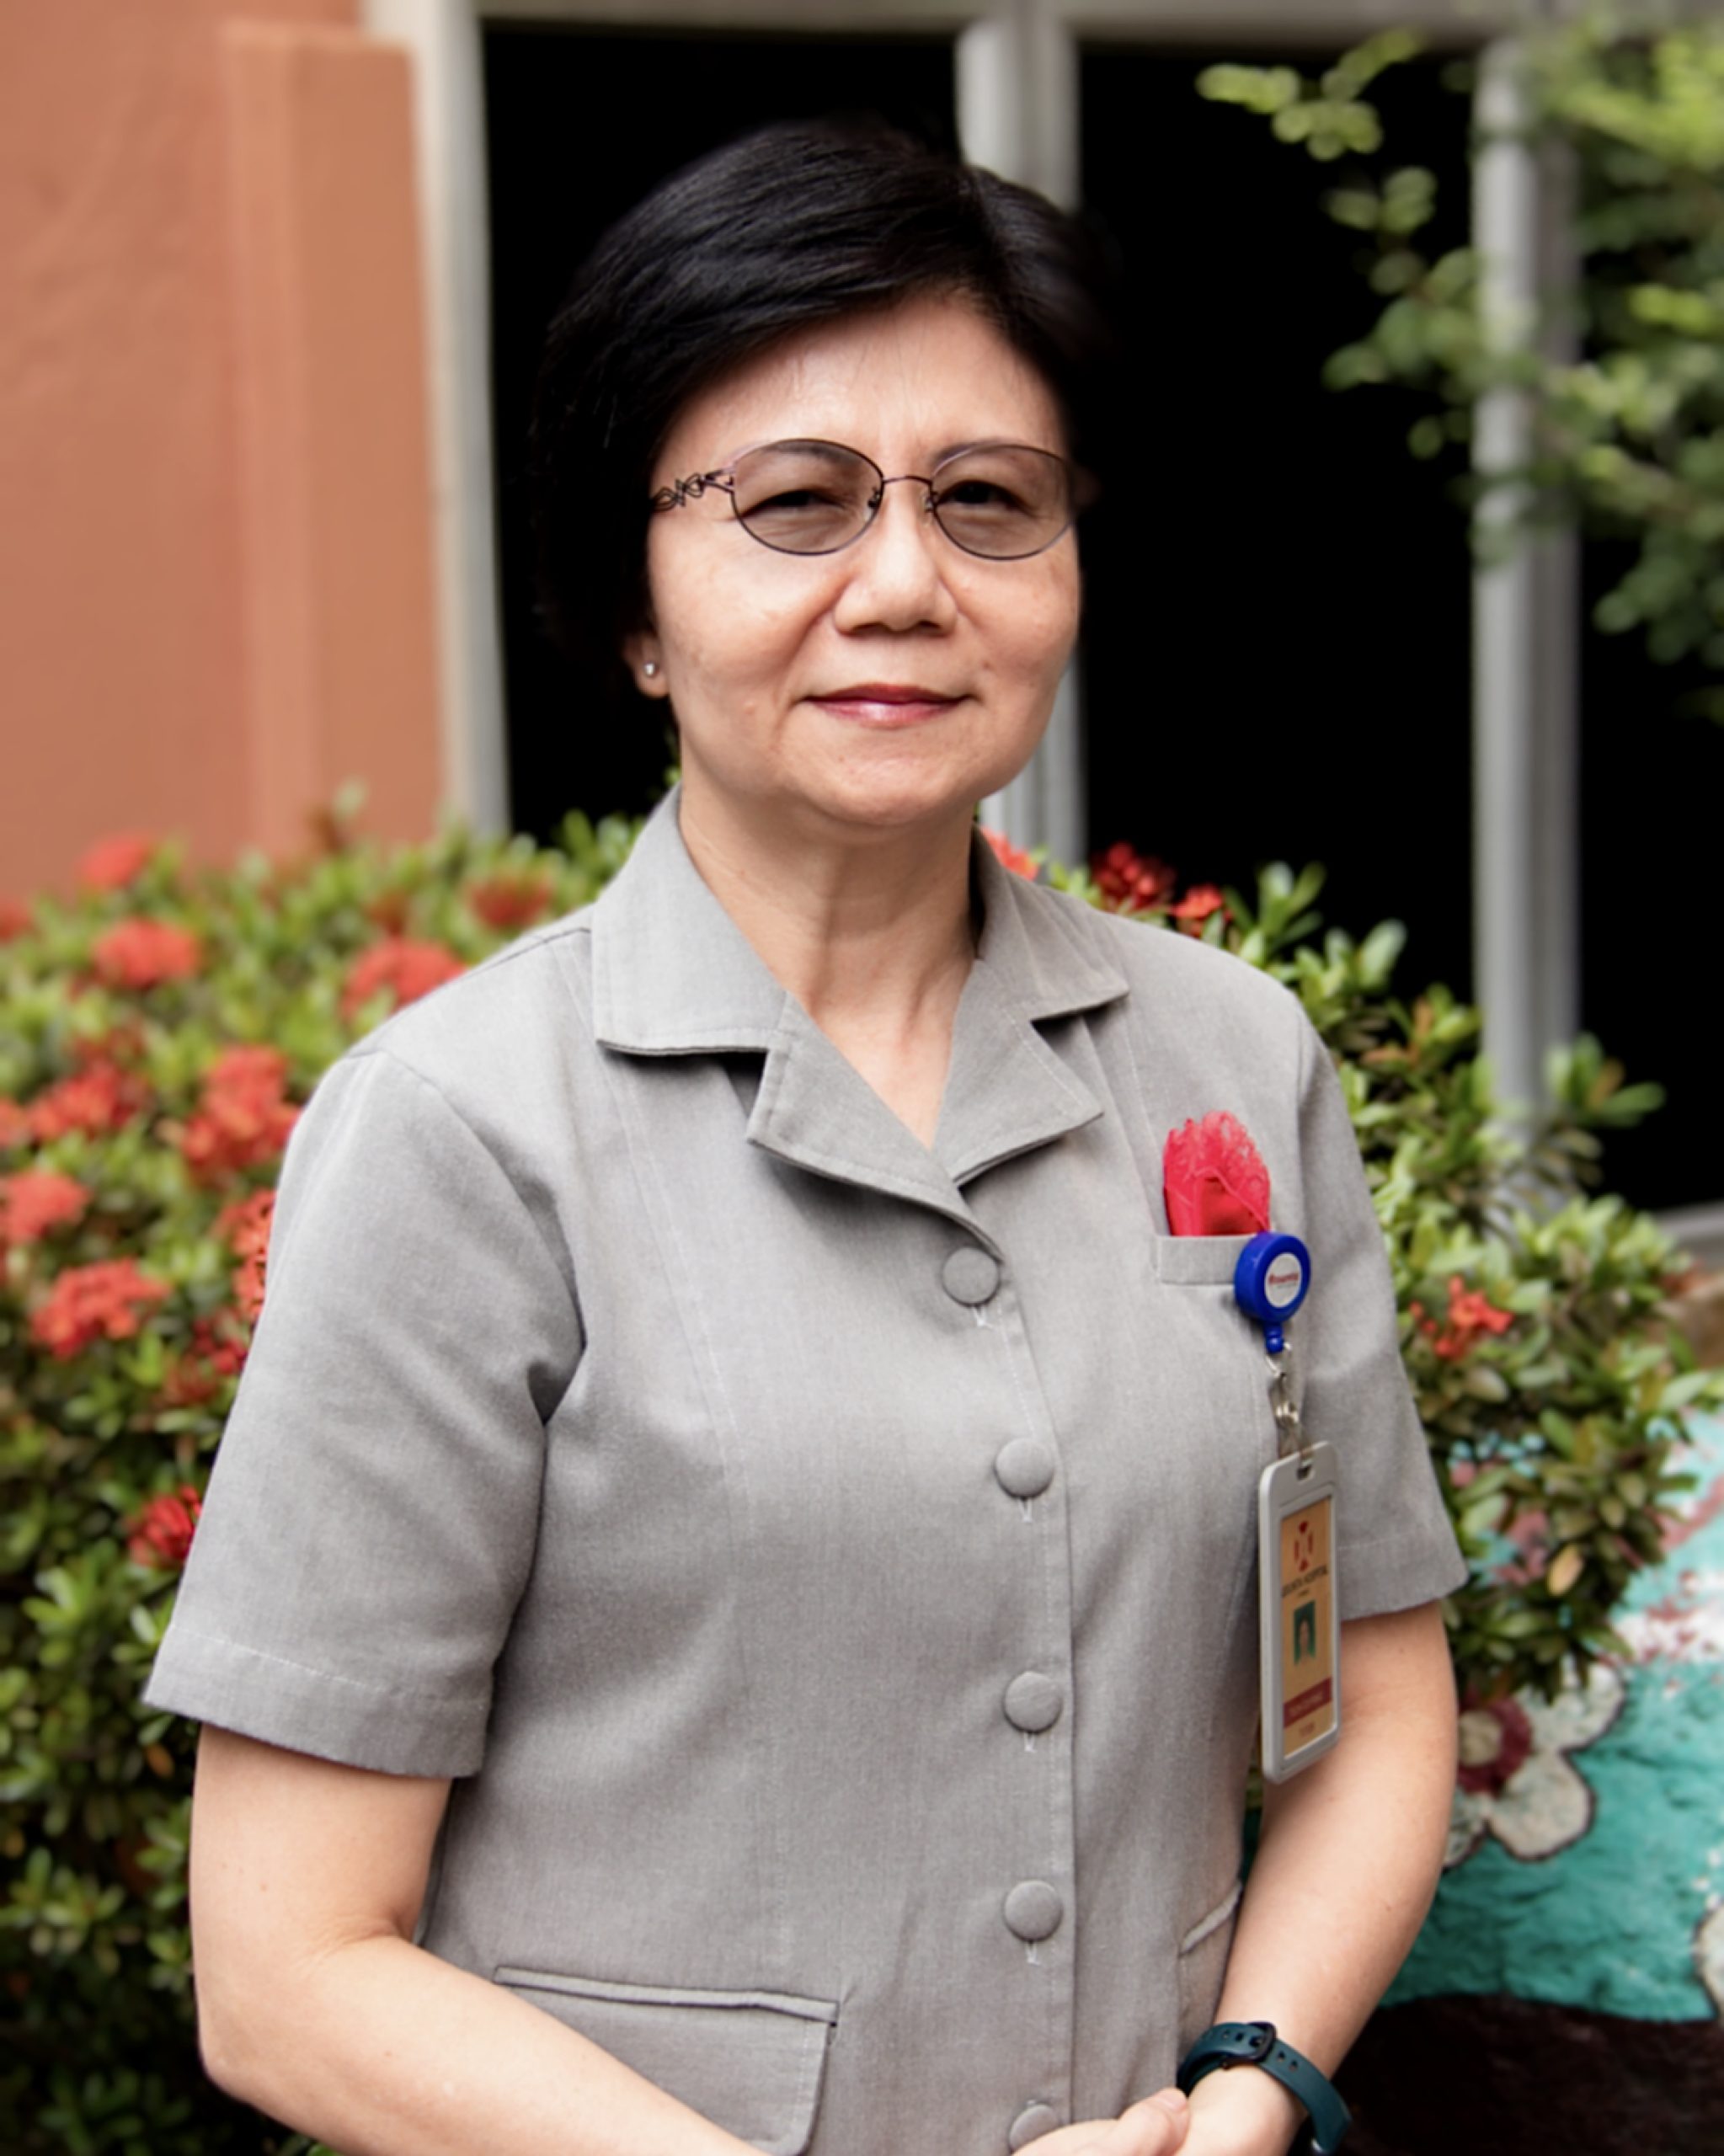 Ms Teoh Cui Fang